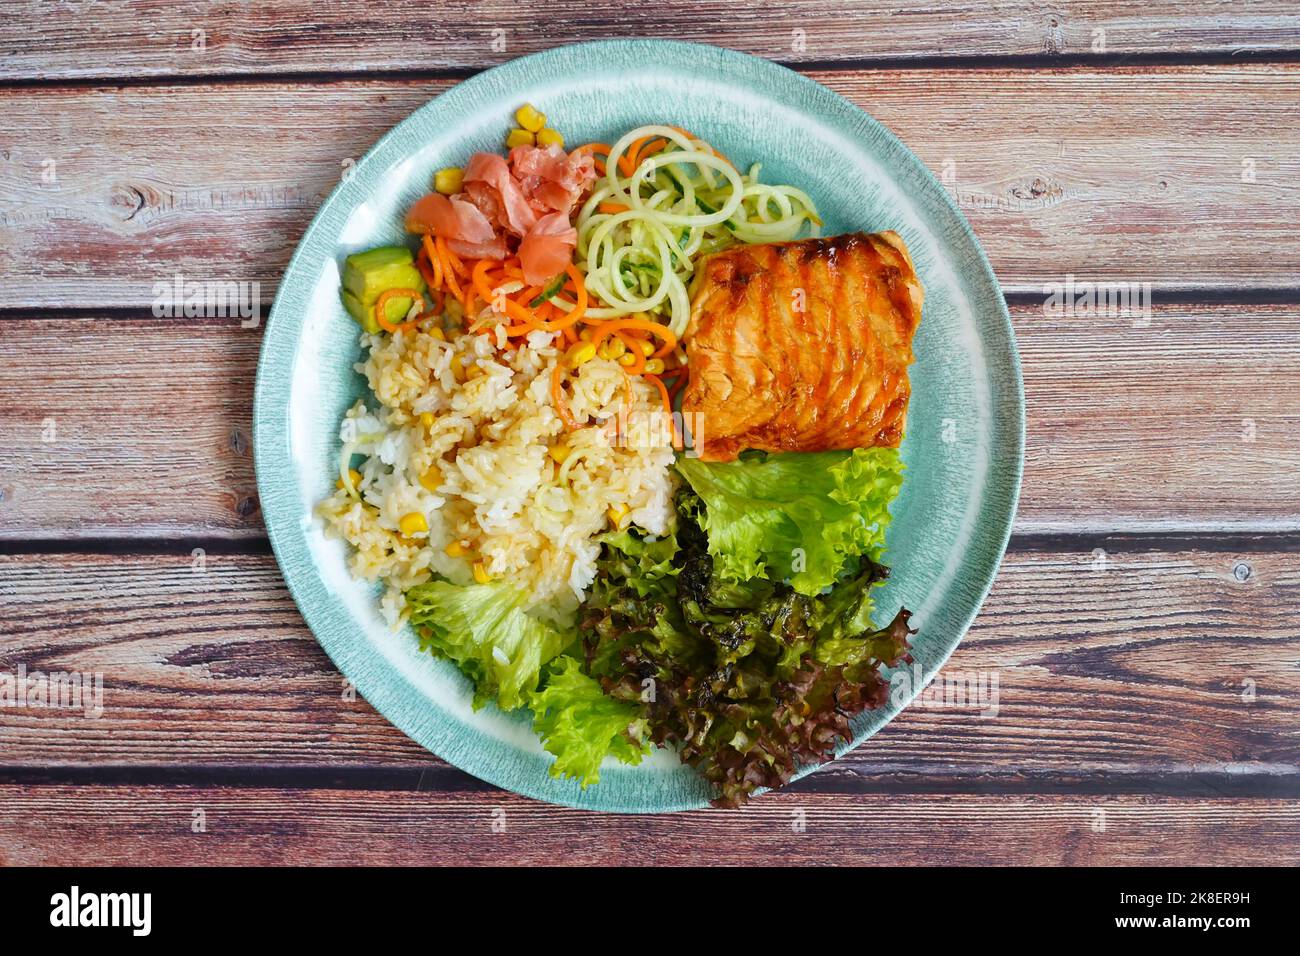 Alimentazione bilanciata cucinata in casa: Salmone alla griglia, riso, verdure e insalata. Foto Stock